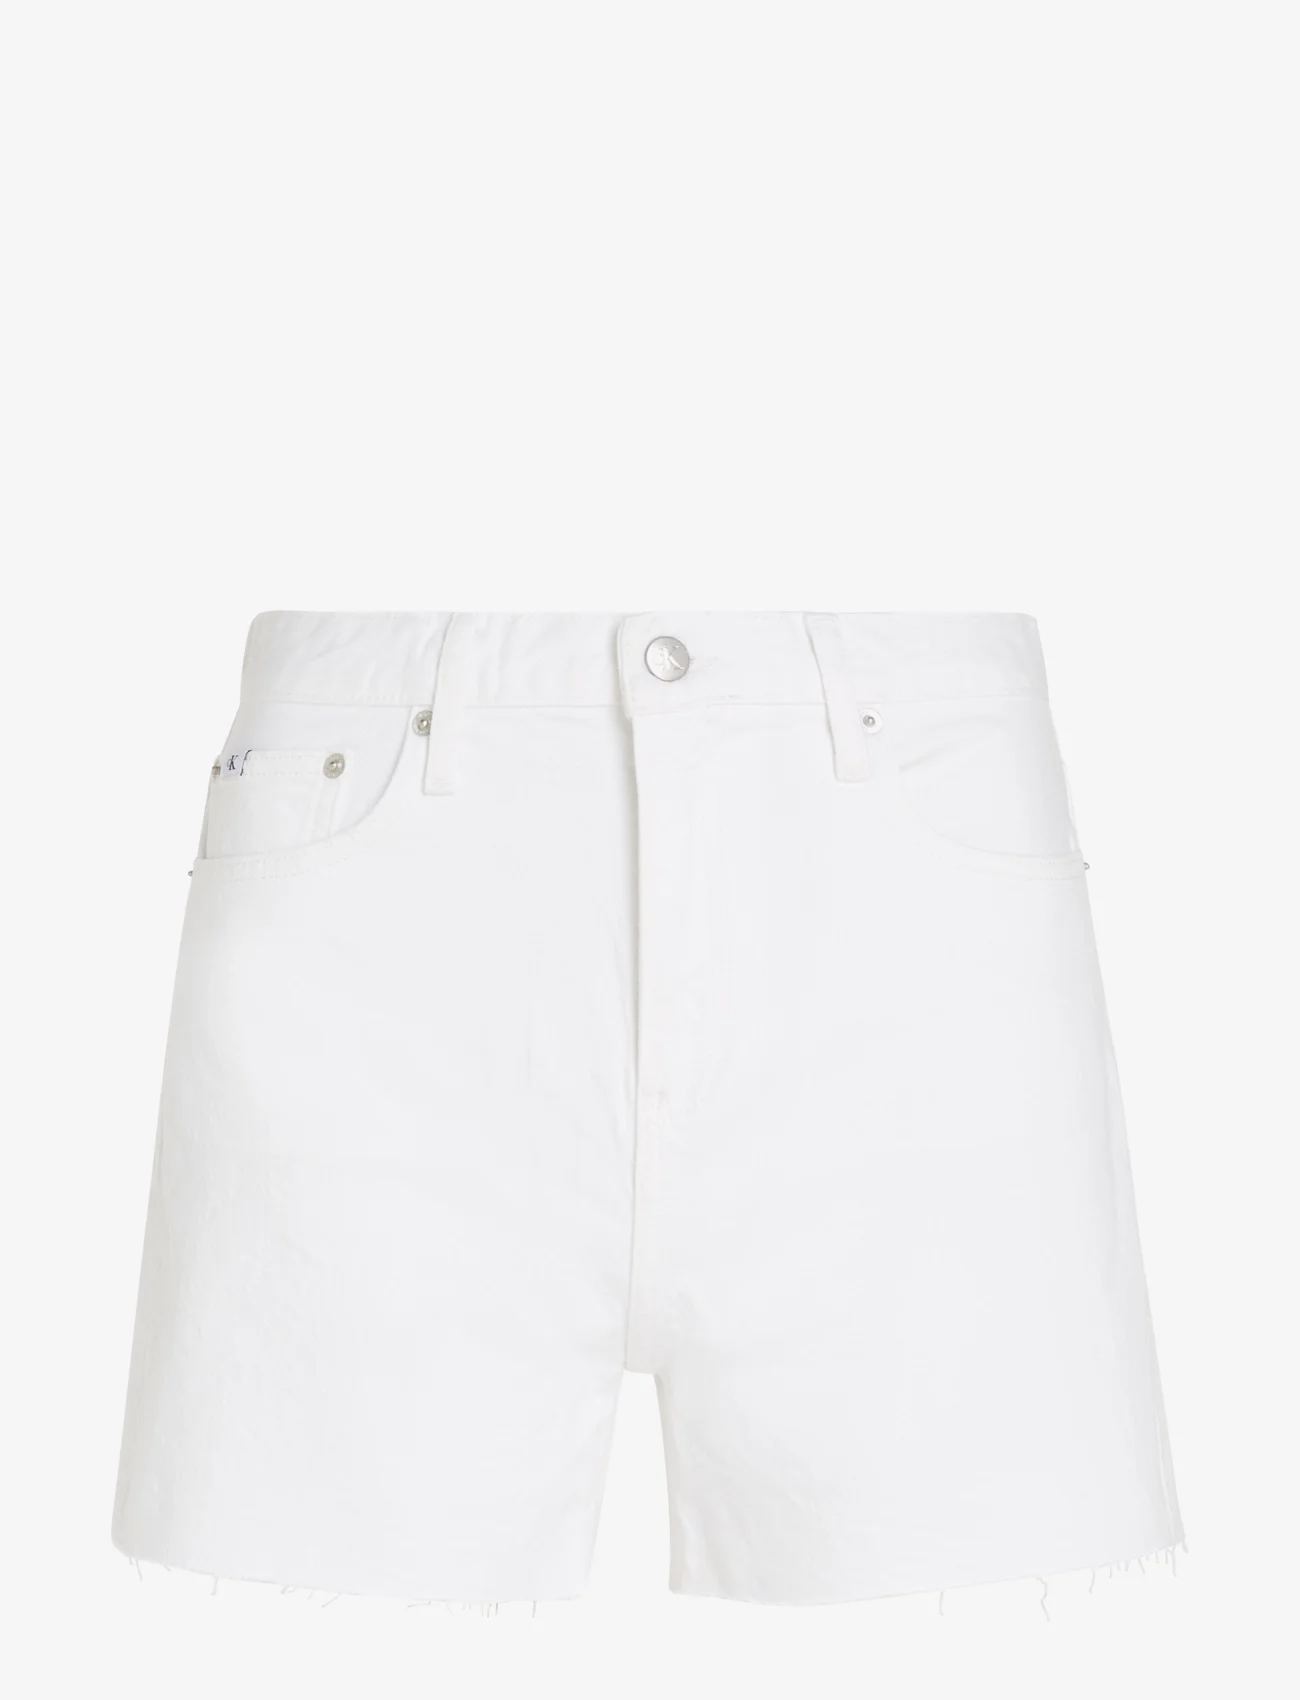 Calvin Klein Jeans - MOM SHORT - denim shorts - denim light - 0